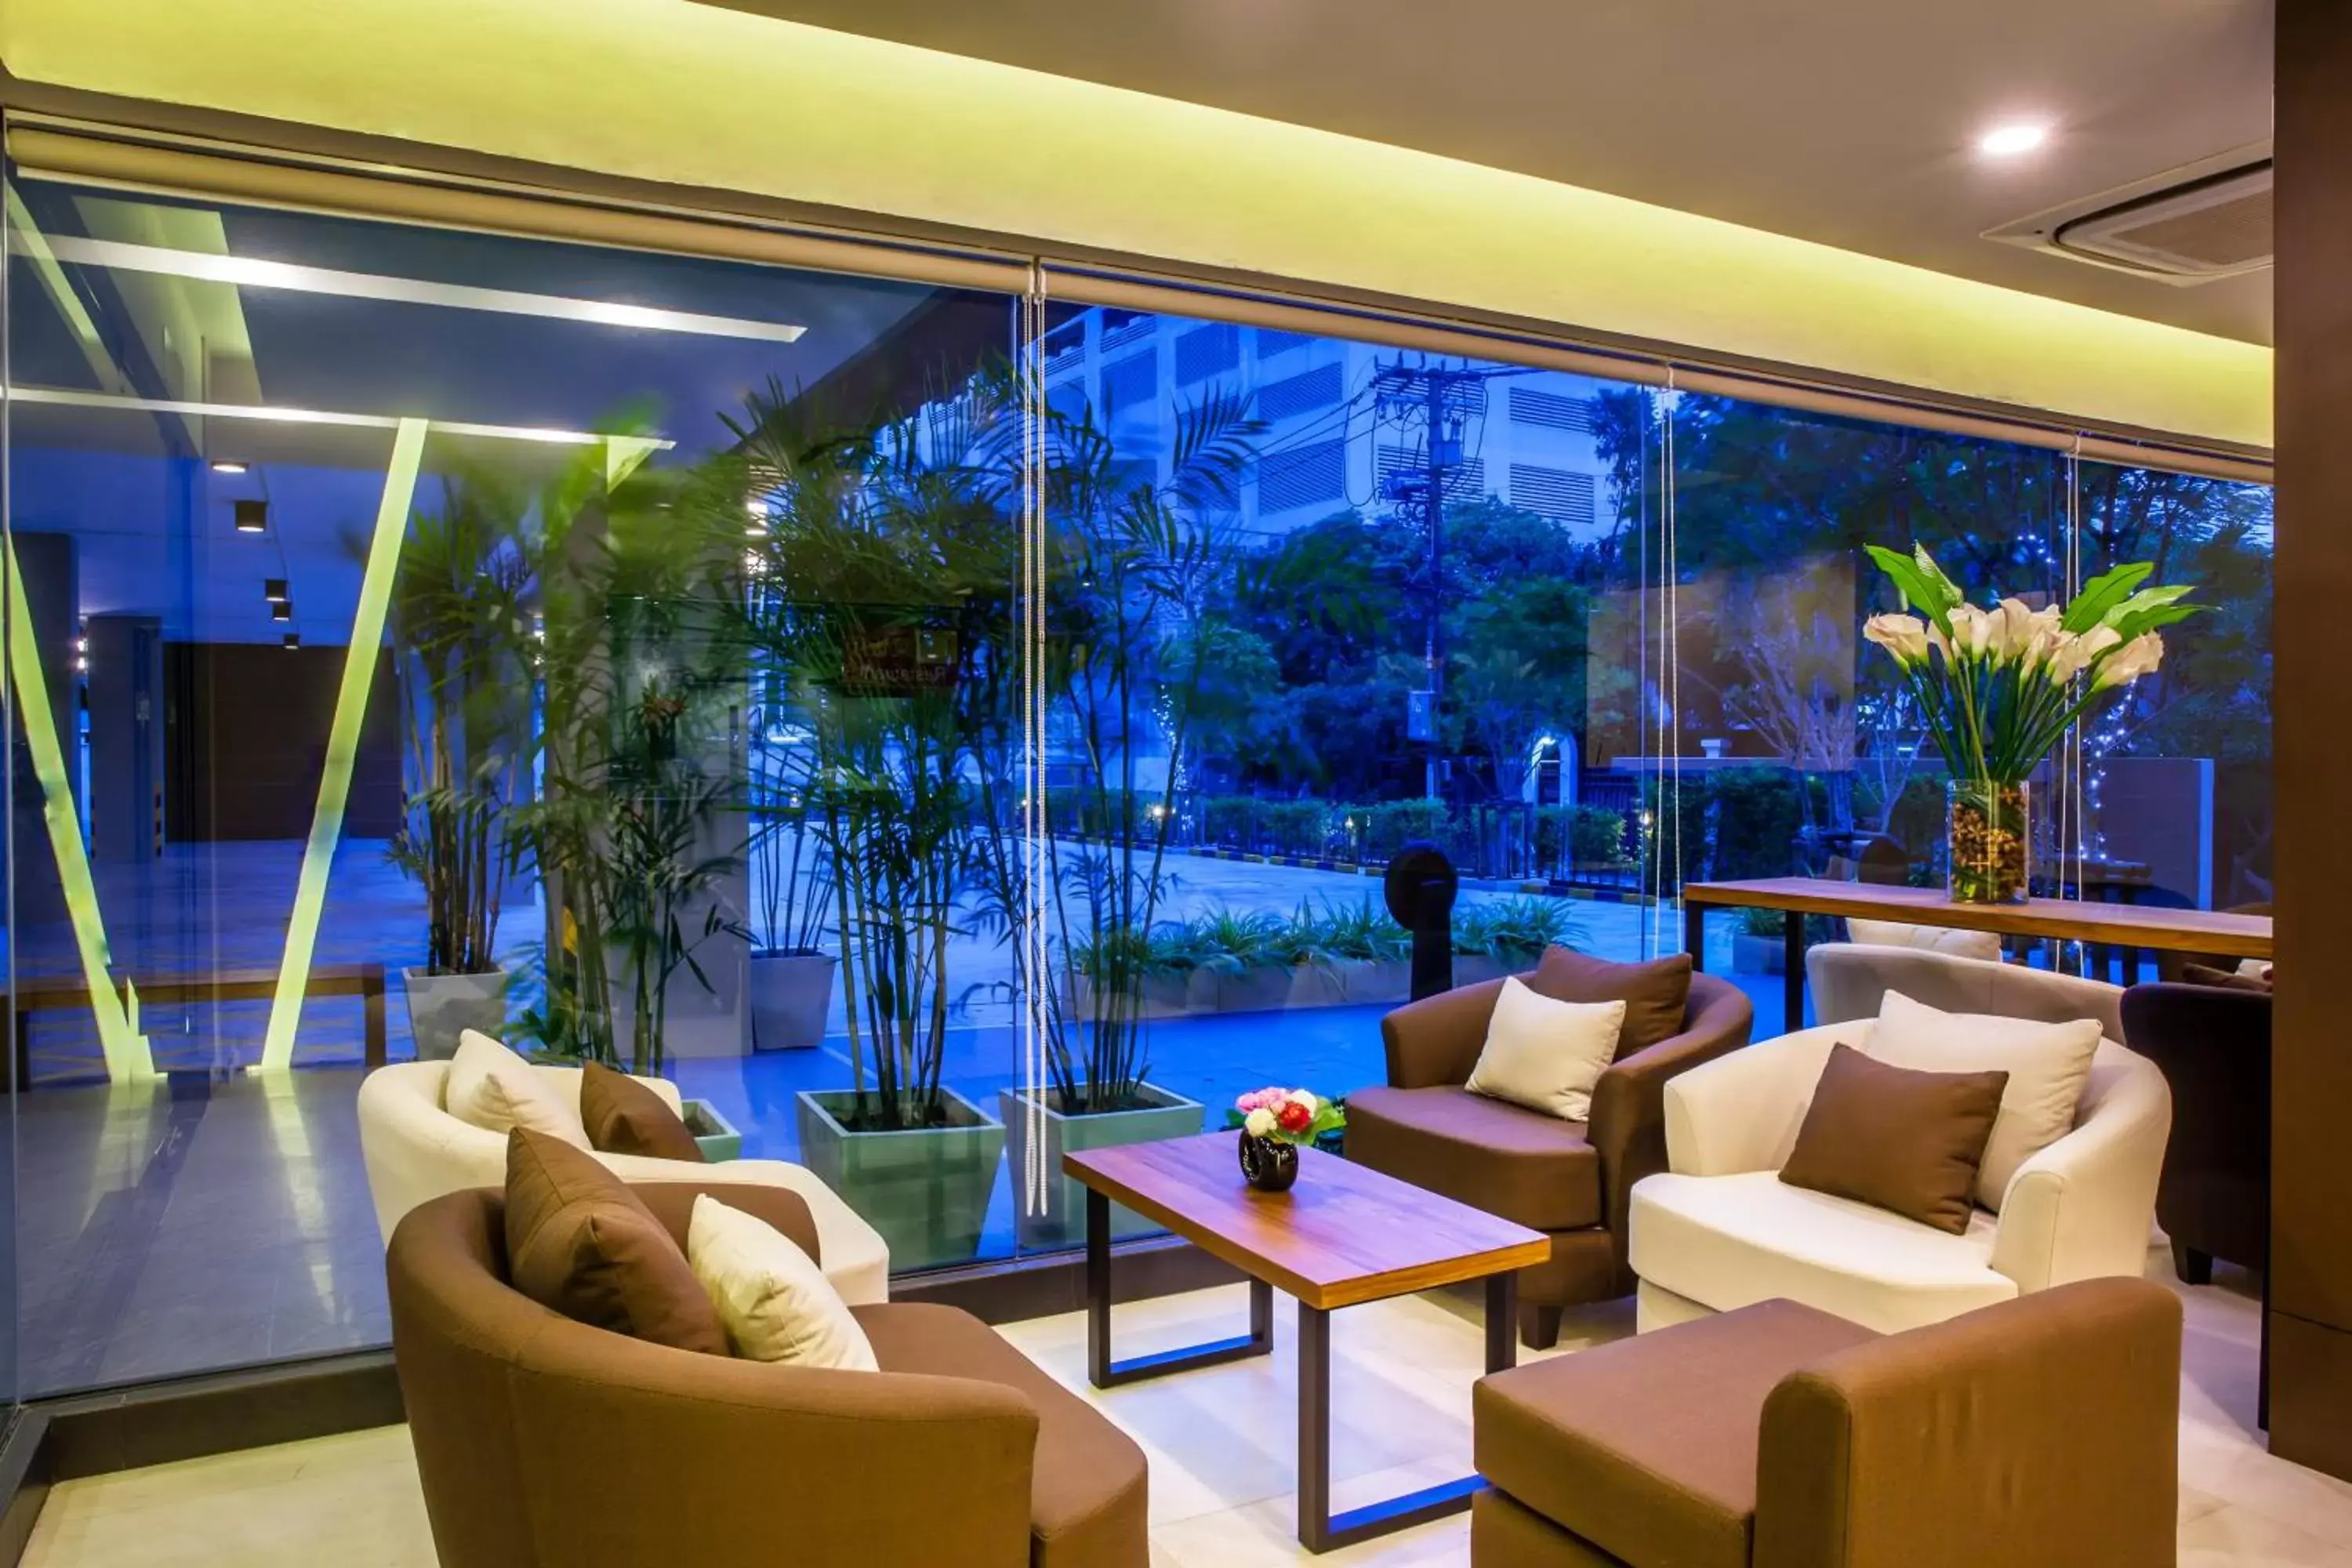 Lobby or reception in Livotel Hotel Kaset Nawamin Bangkok